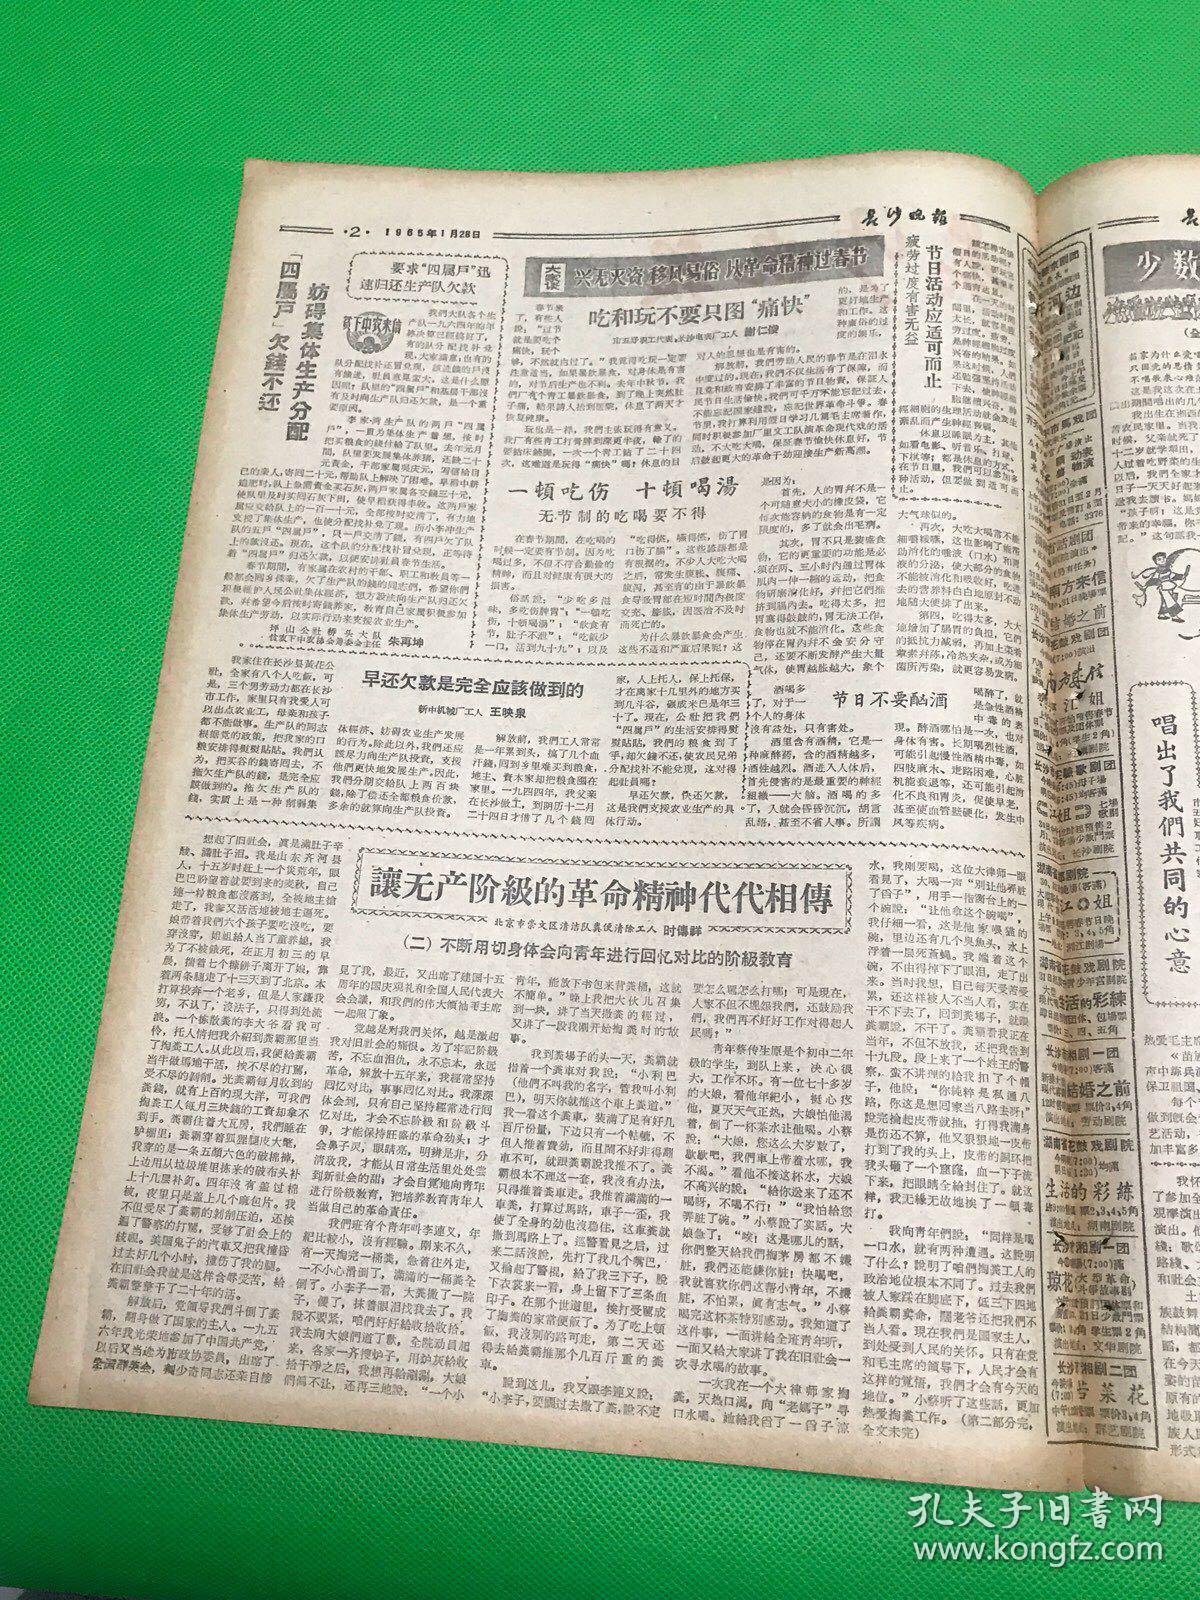 《长沙晚报》1965年1月28日 第1302号 共4版 生日报